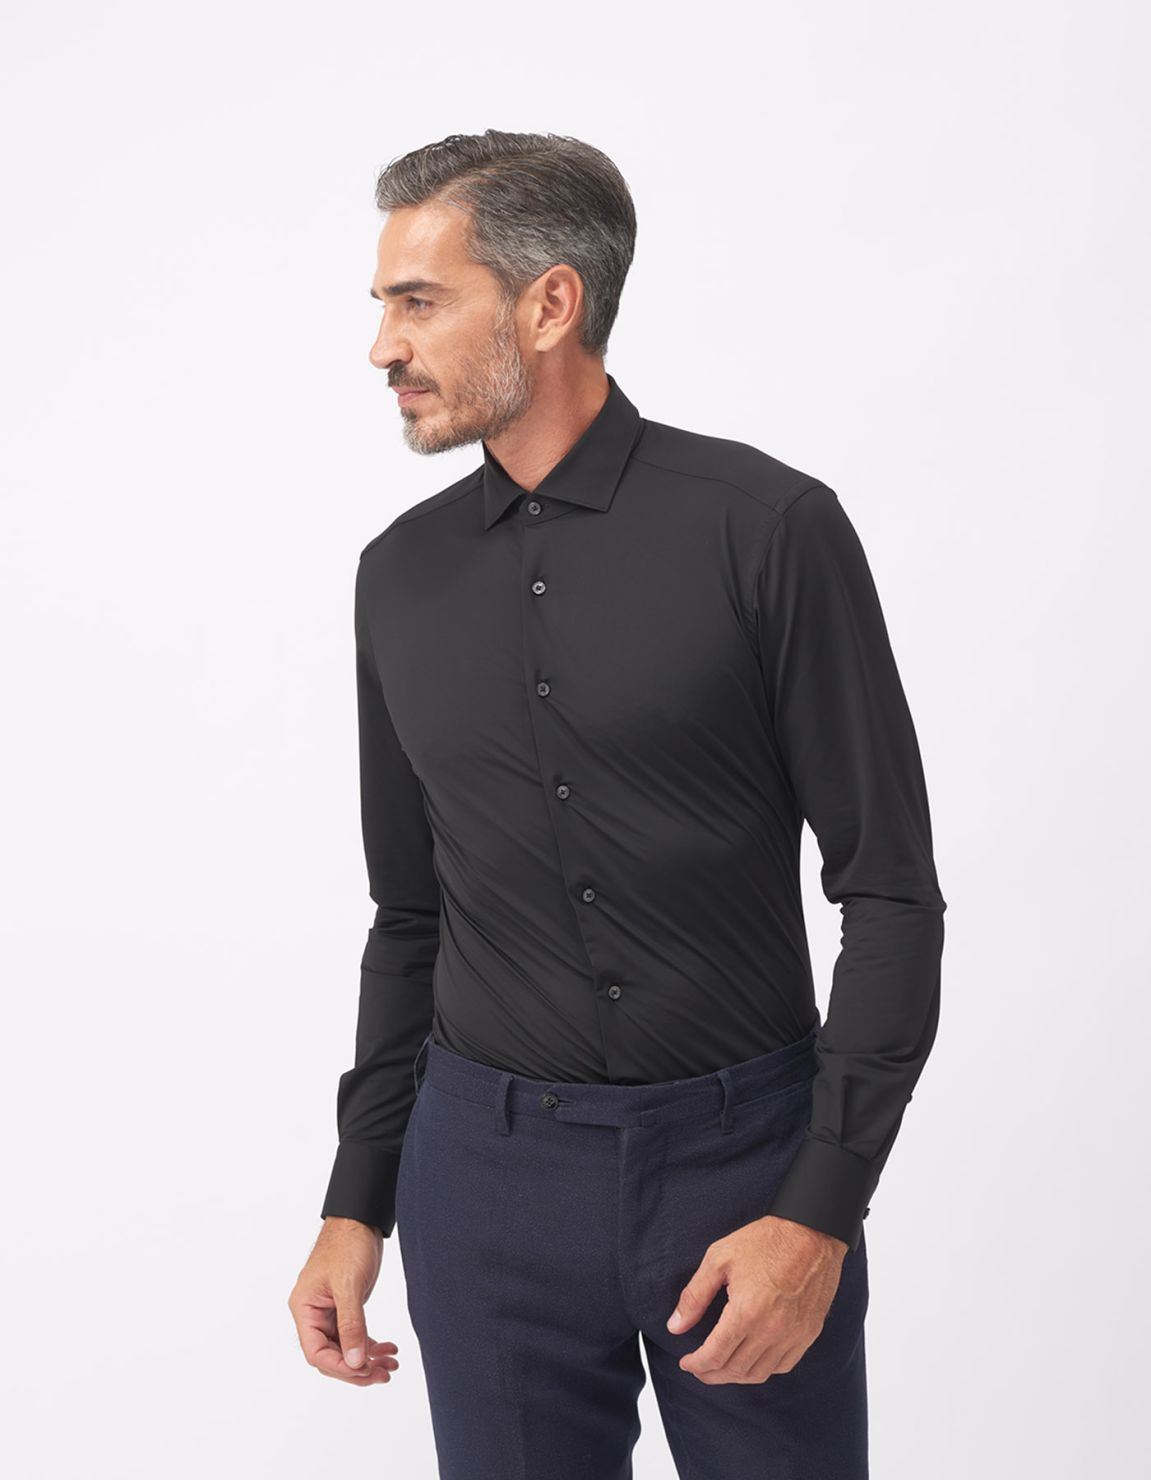 Shirt Collar small cutaway Black Twill Tailor Custom Fit 5